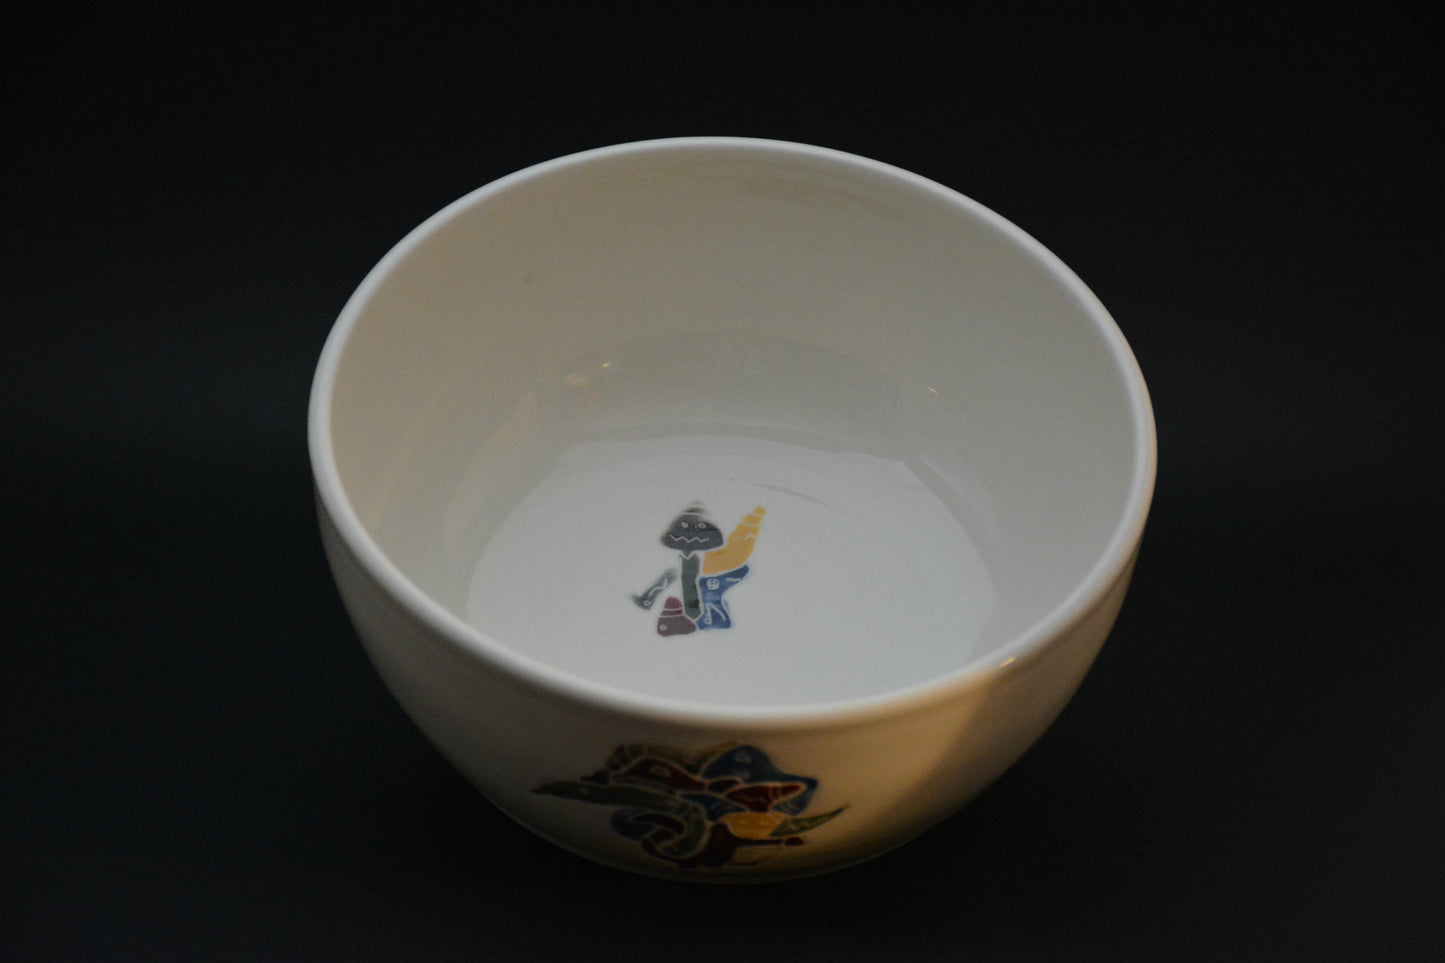 BL-17 Ceramic Bowl - Bol de porcelaine